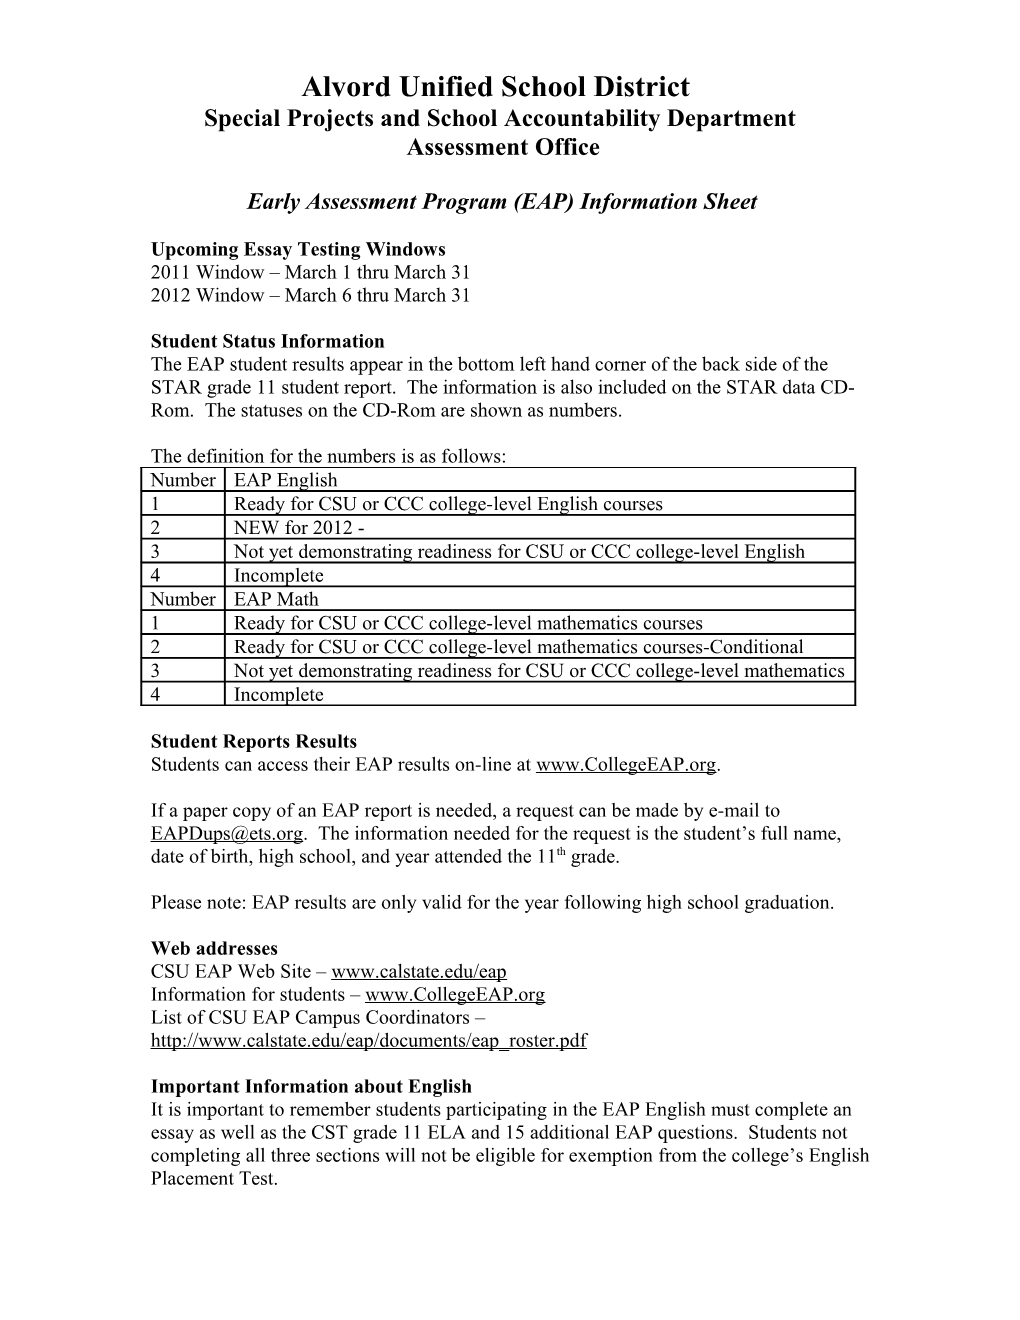 Early Assessment Program (EAP)